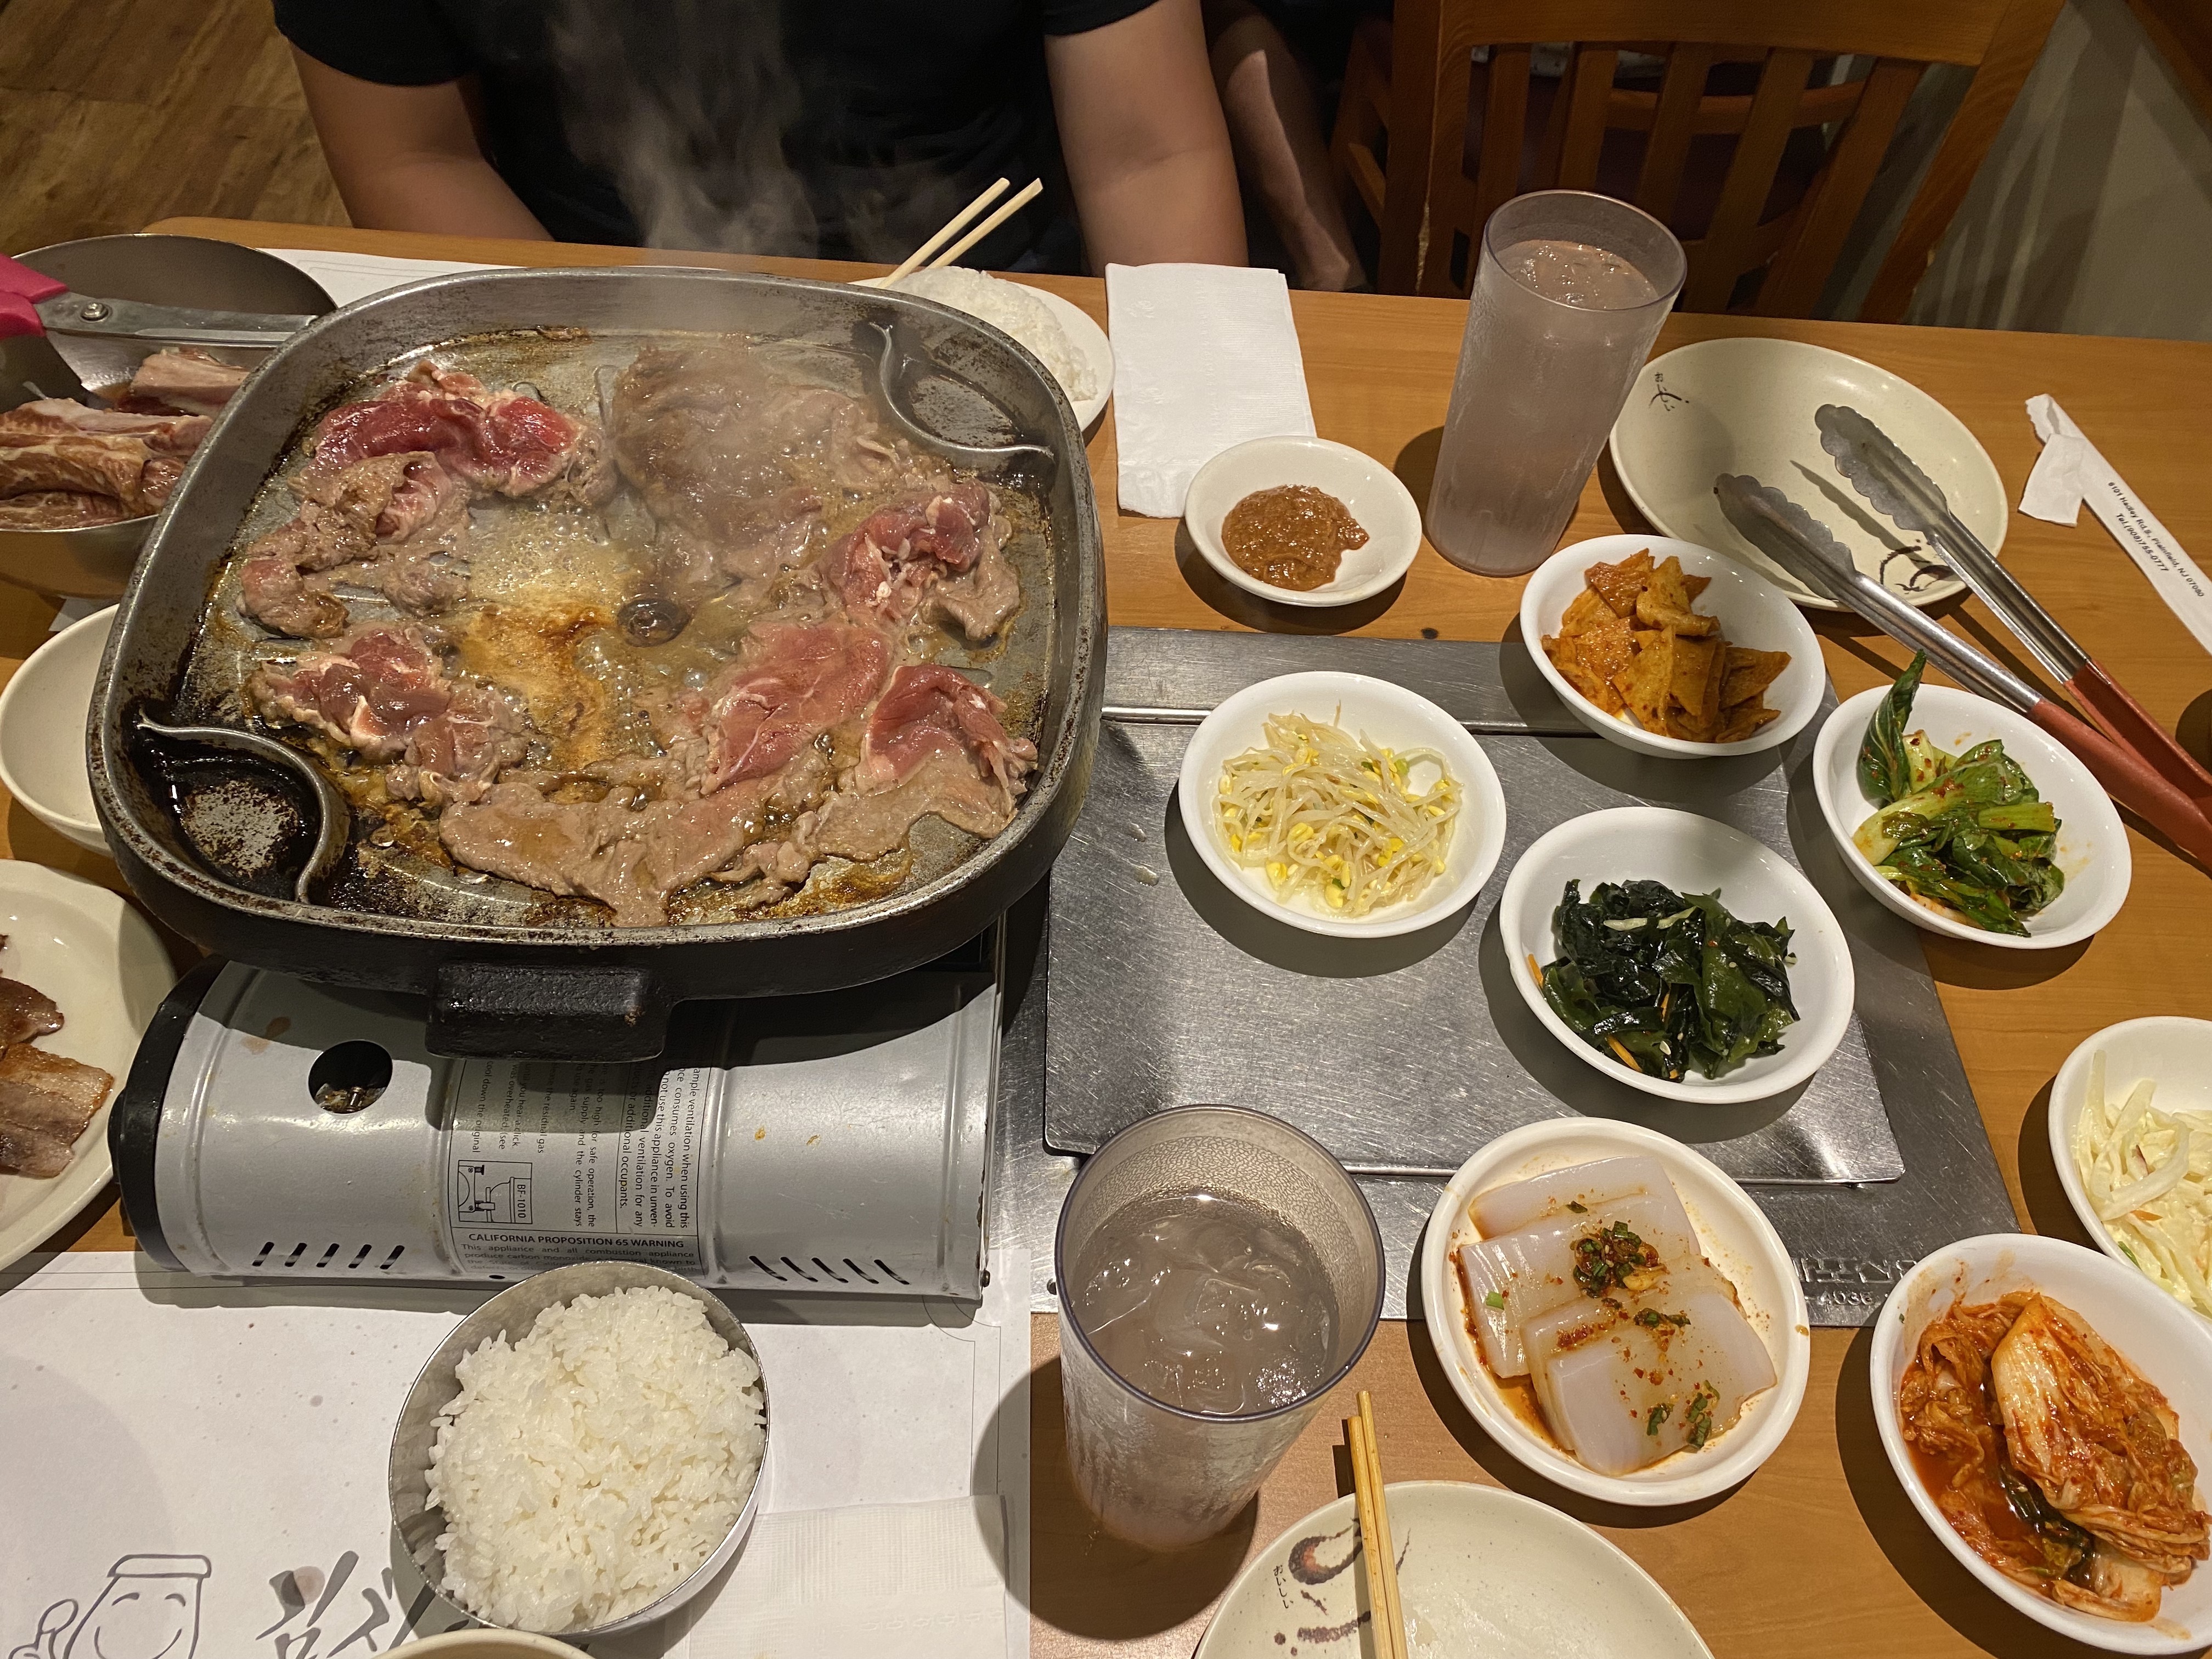 10 Korean Kitchenware ideas  kitchenware, korean bbq grill